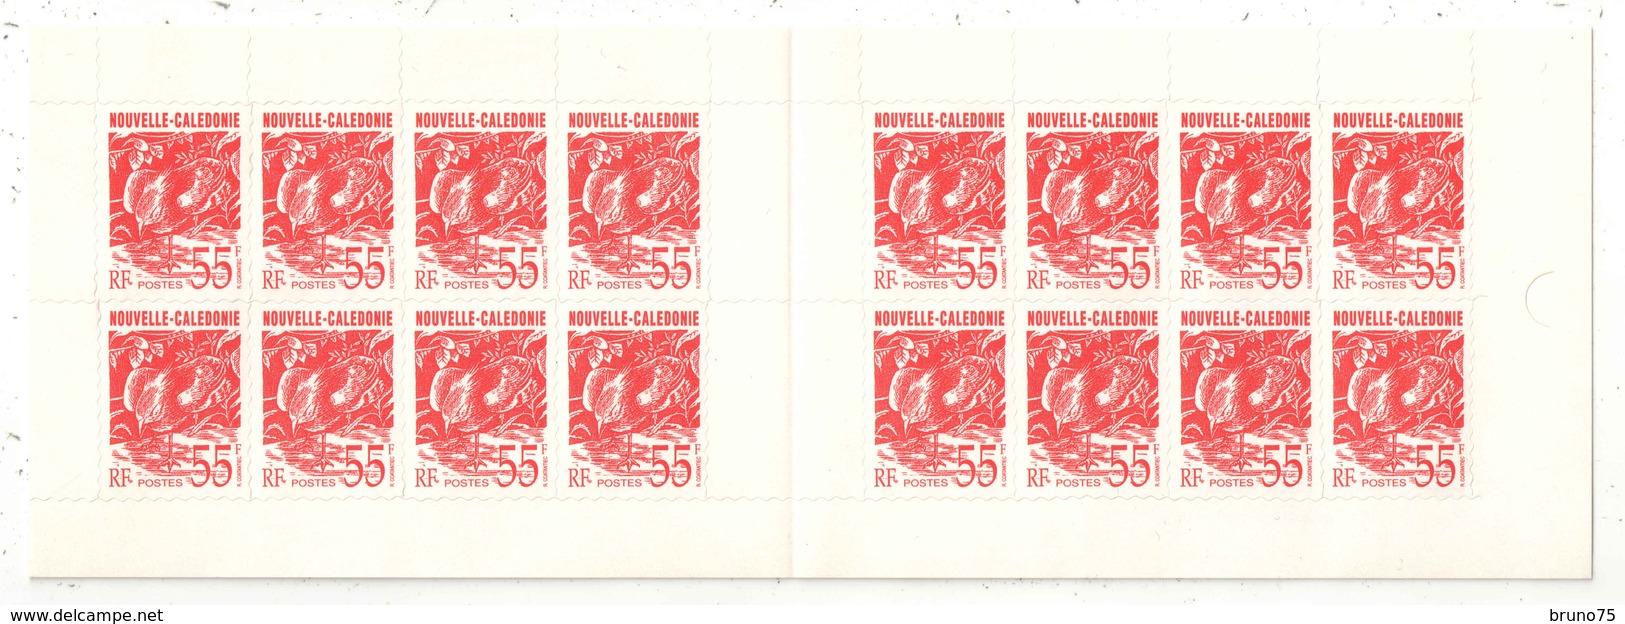 Nouvelle-Calédonie - Carnet - YT C639 ** - 1993 - Non Plié - Carnets